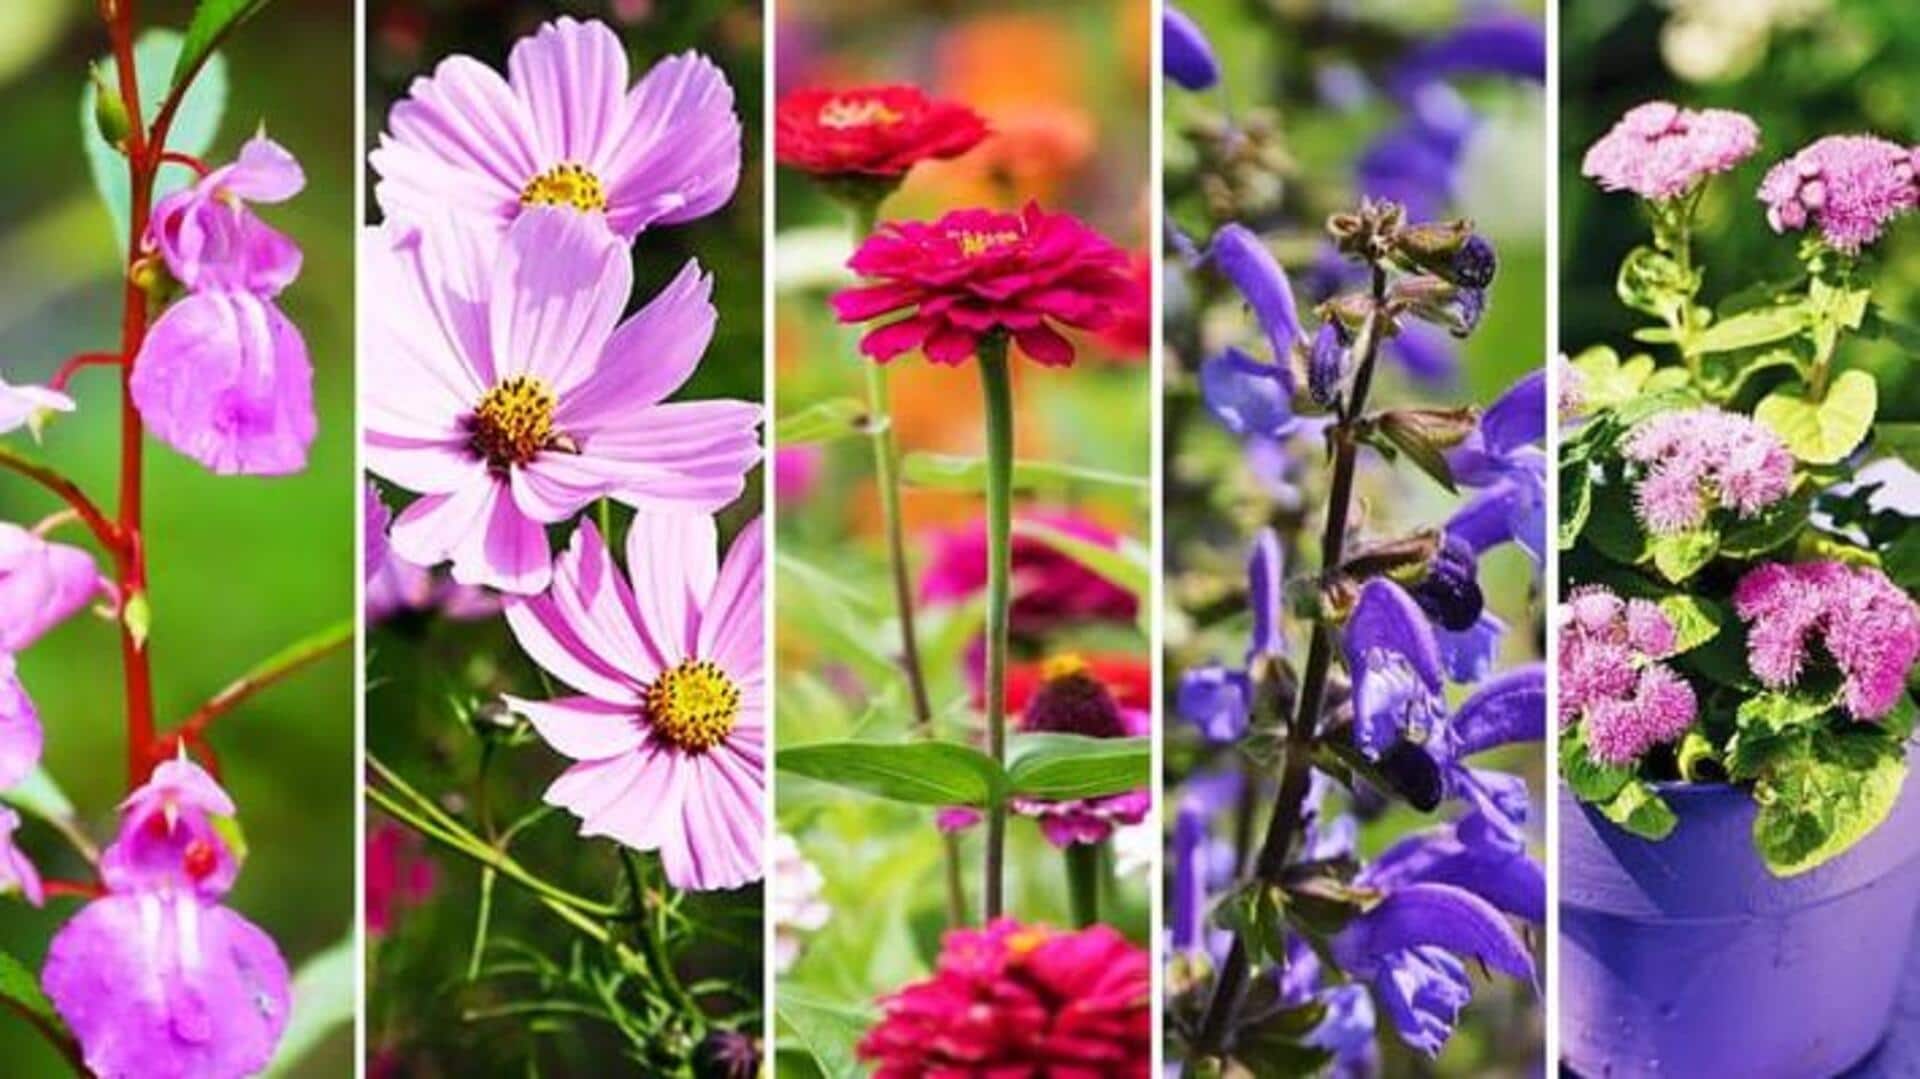 मानसून के दौरान अपने गार्डन में लगाएं ये फूल वाले पौधे, लगेंगे बहुत खूबसूरत